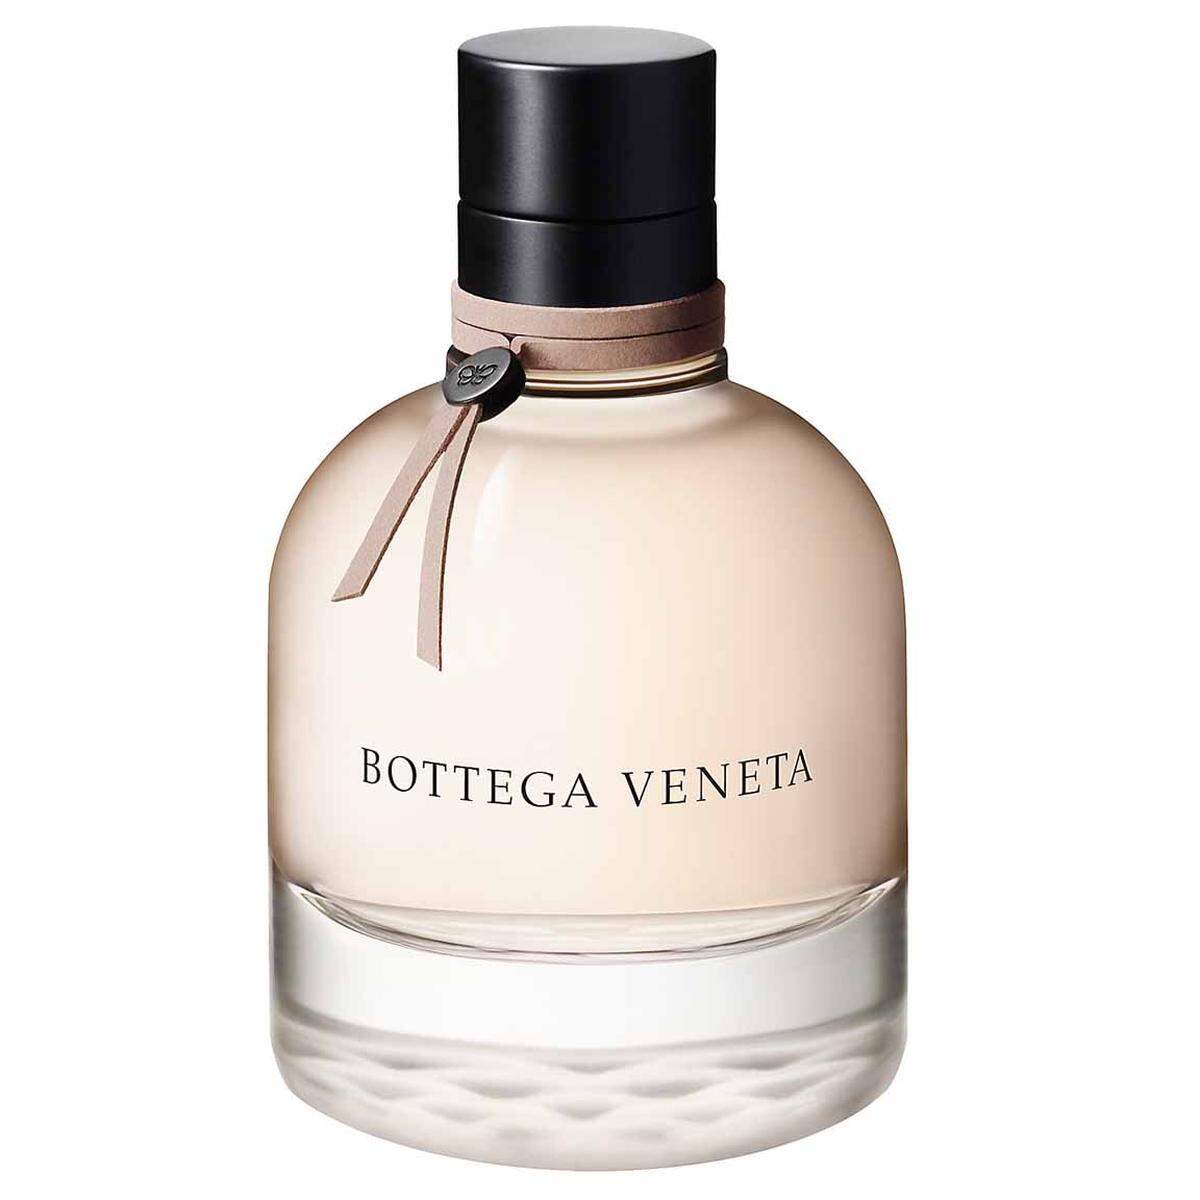 Die neue "Eau sensuelle" von Bottega Veneta ist die fruchtige und blumige Weiterentwicklung des holzig-ledrigen Signaturedufts der Marke. 75-ml-Flakon um 108 Euro. Redaktion: Daniel Kalt